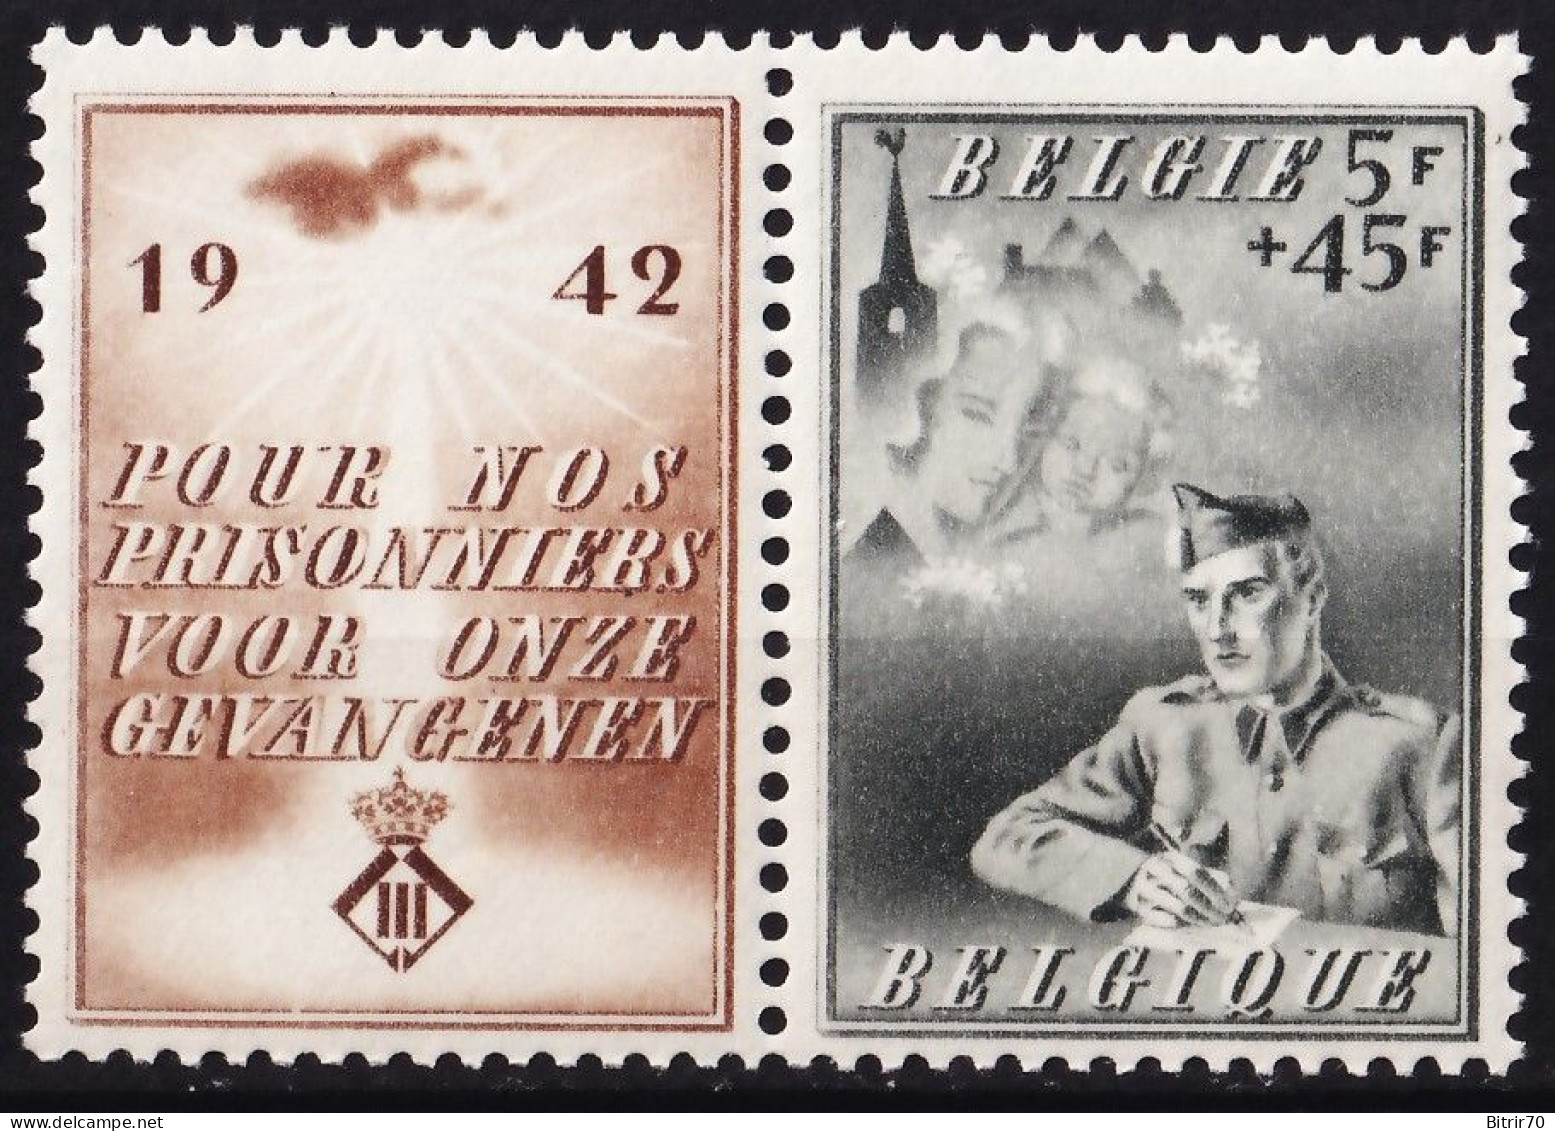 Belgica, 1942 Y&T. 602,  MNH. - Ungebraucht